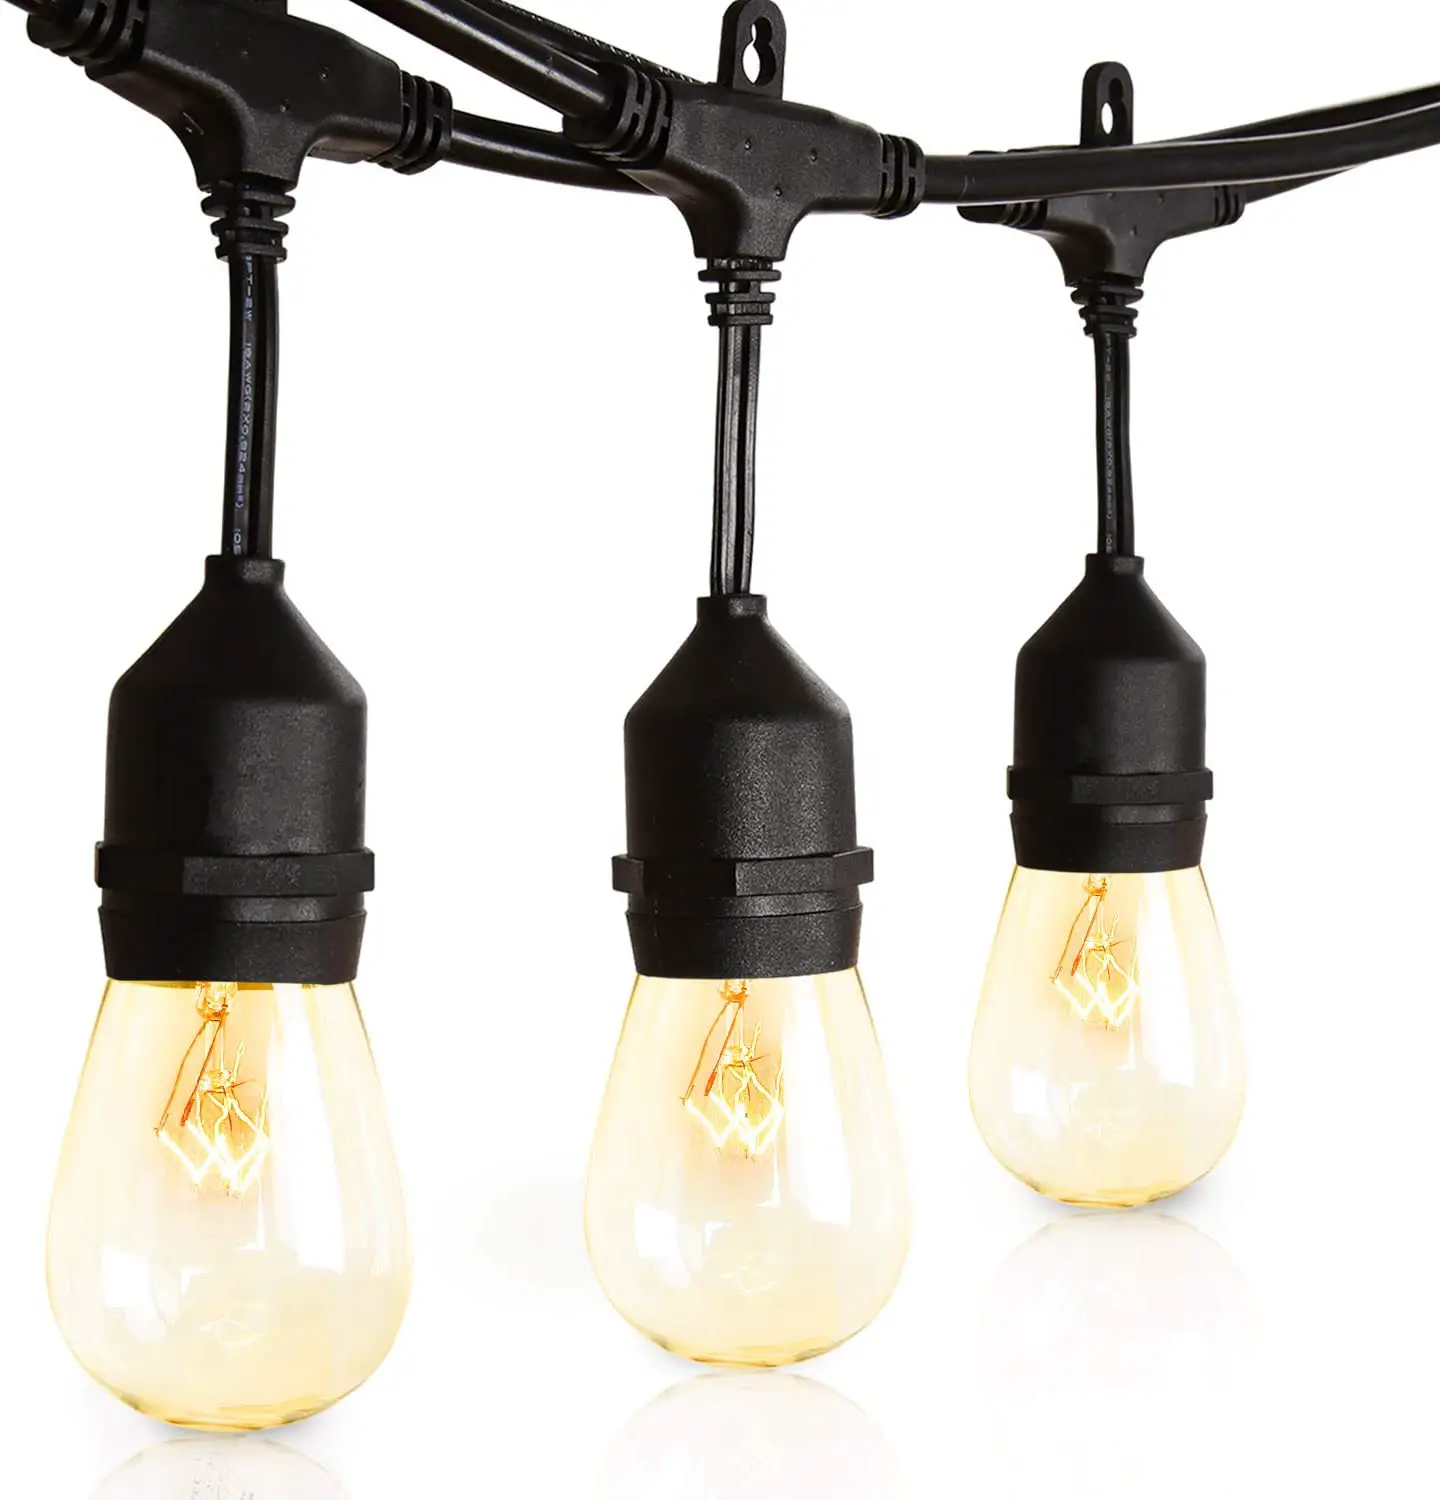 LED string light bulbs